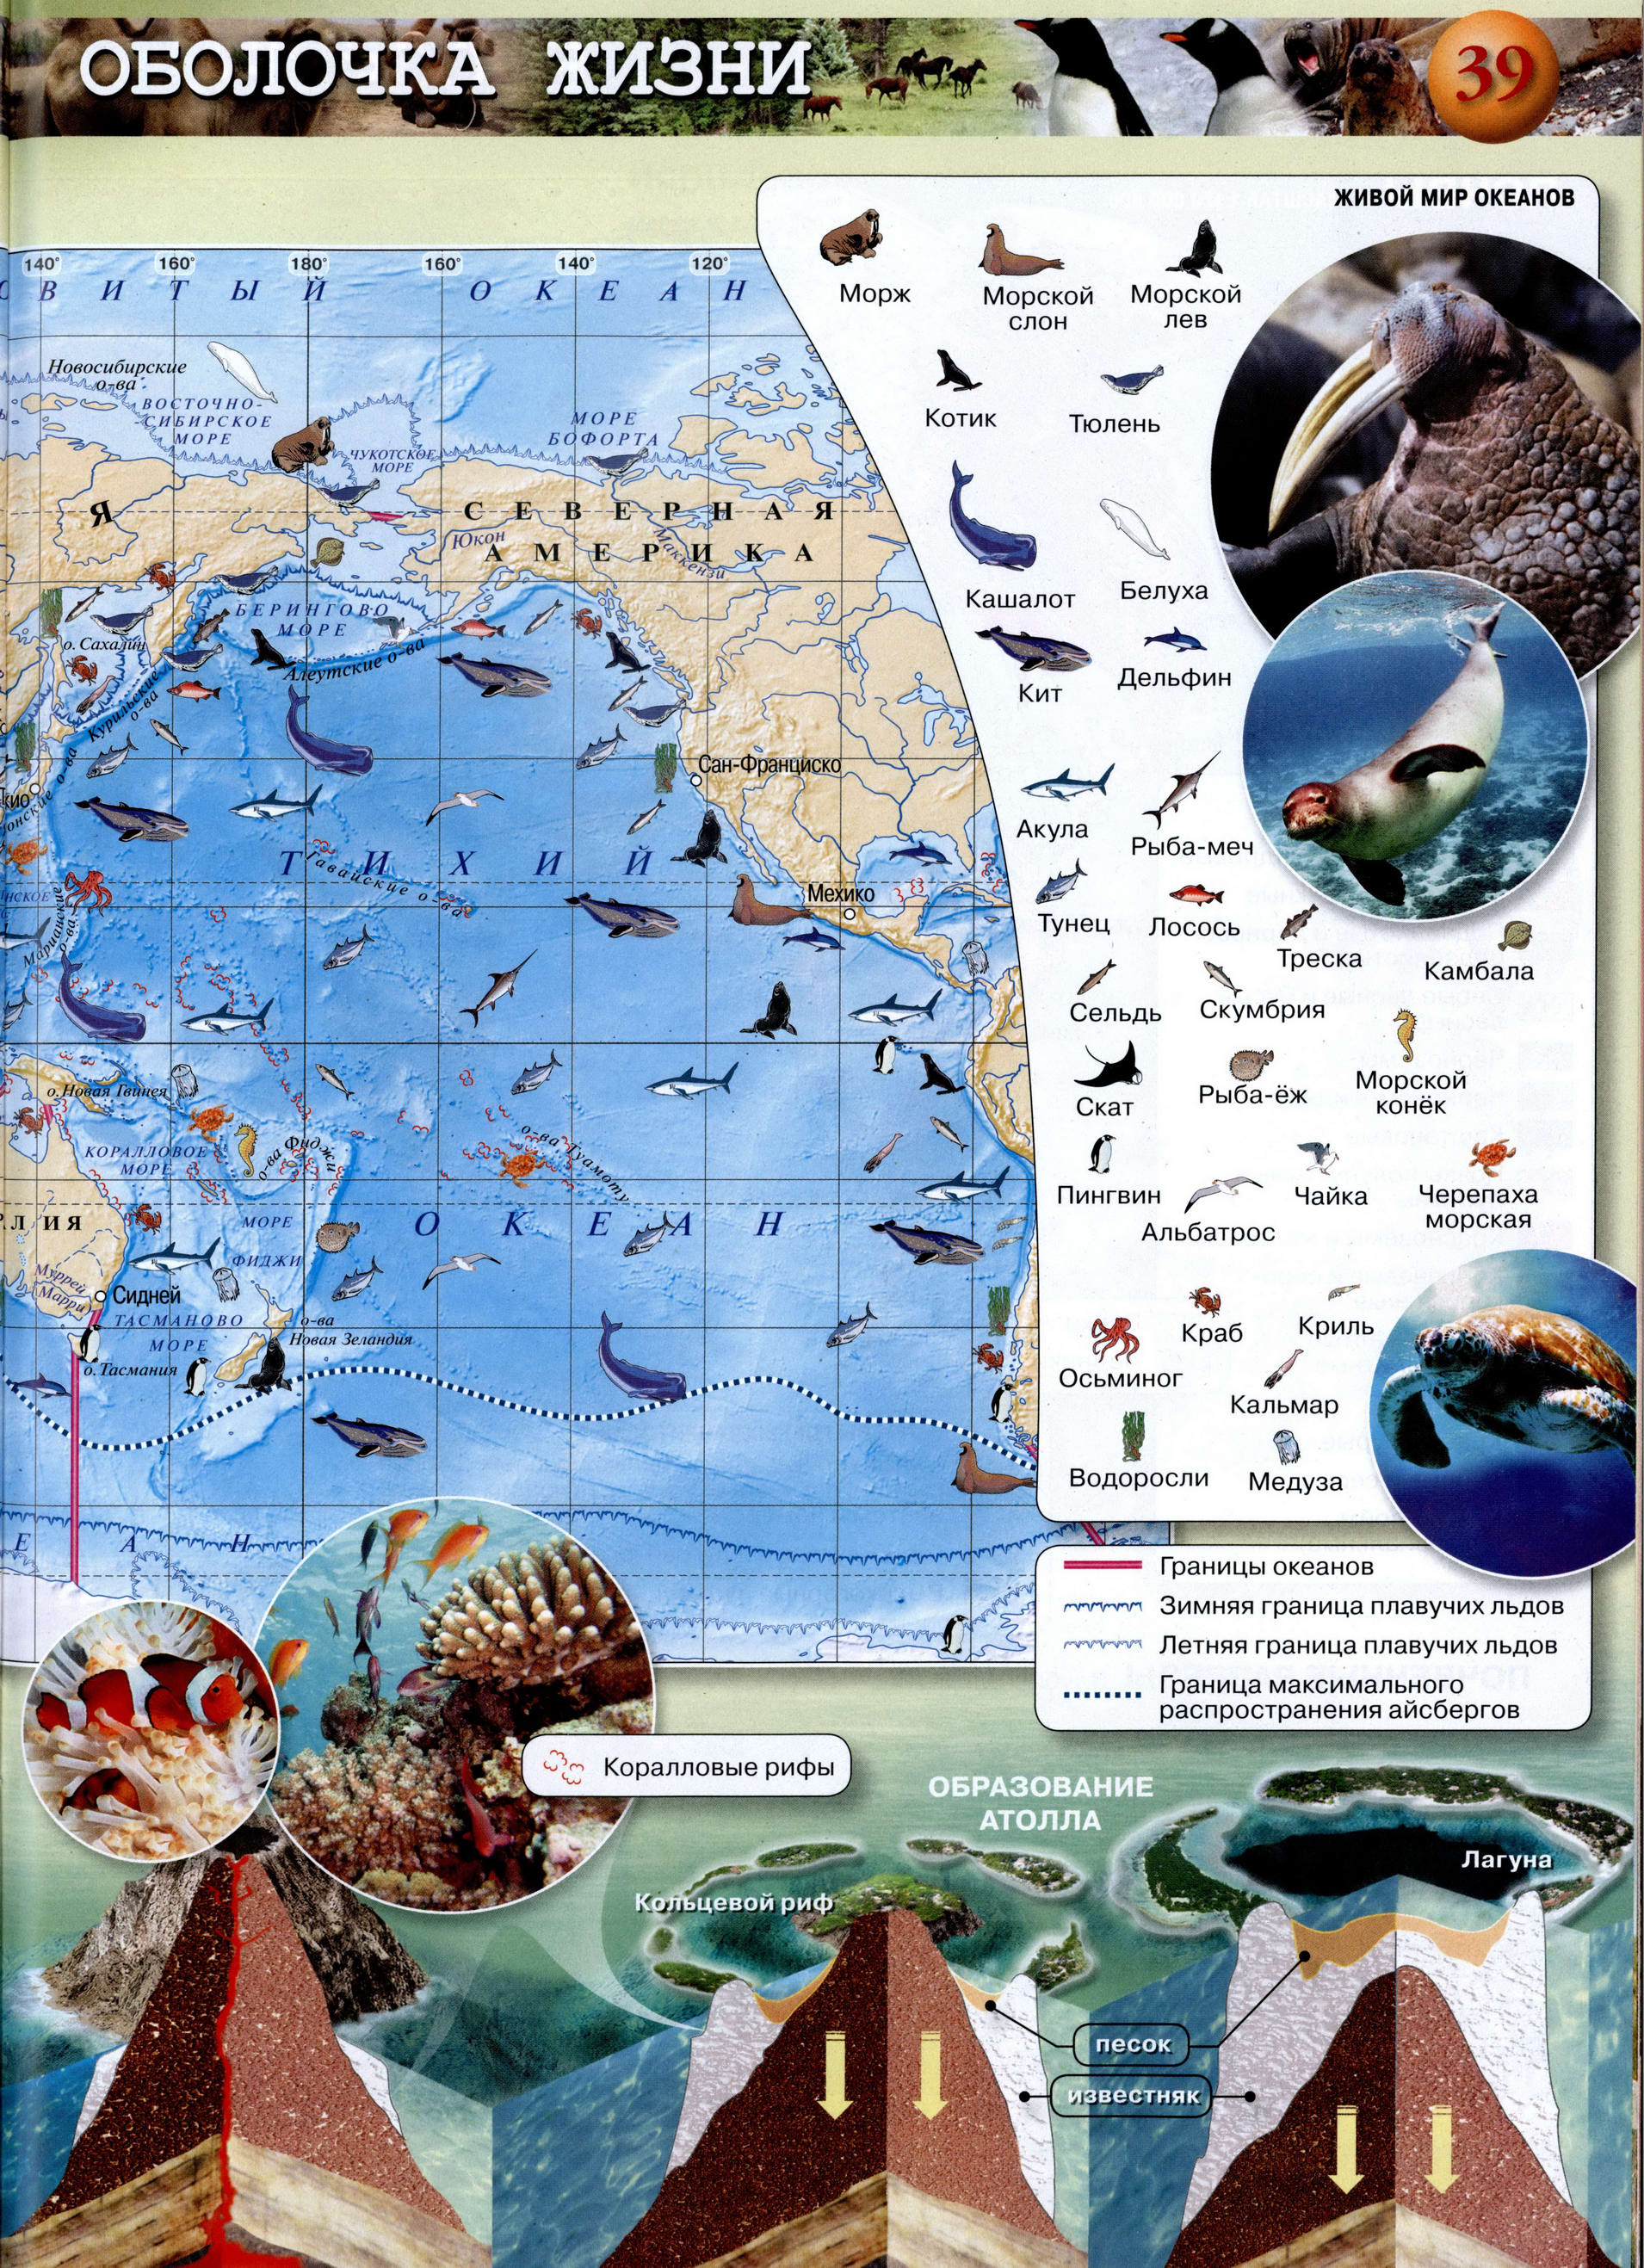 Жизнь в океане - Атлас 5-6 класс география Сферы